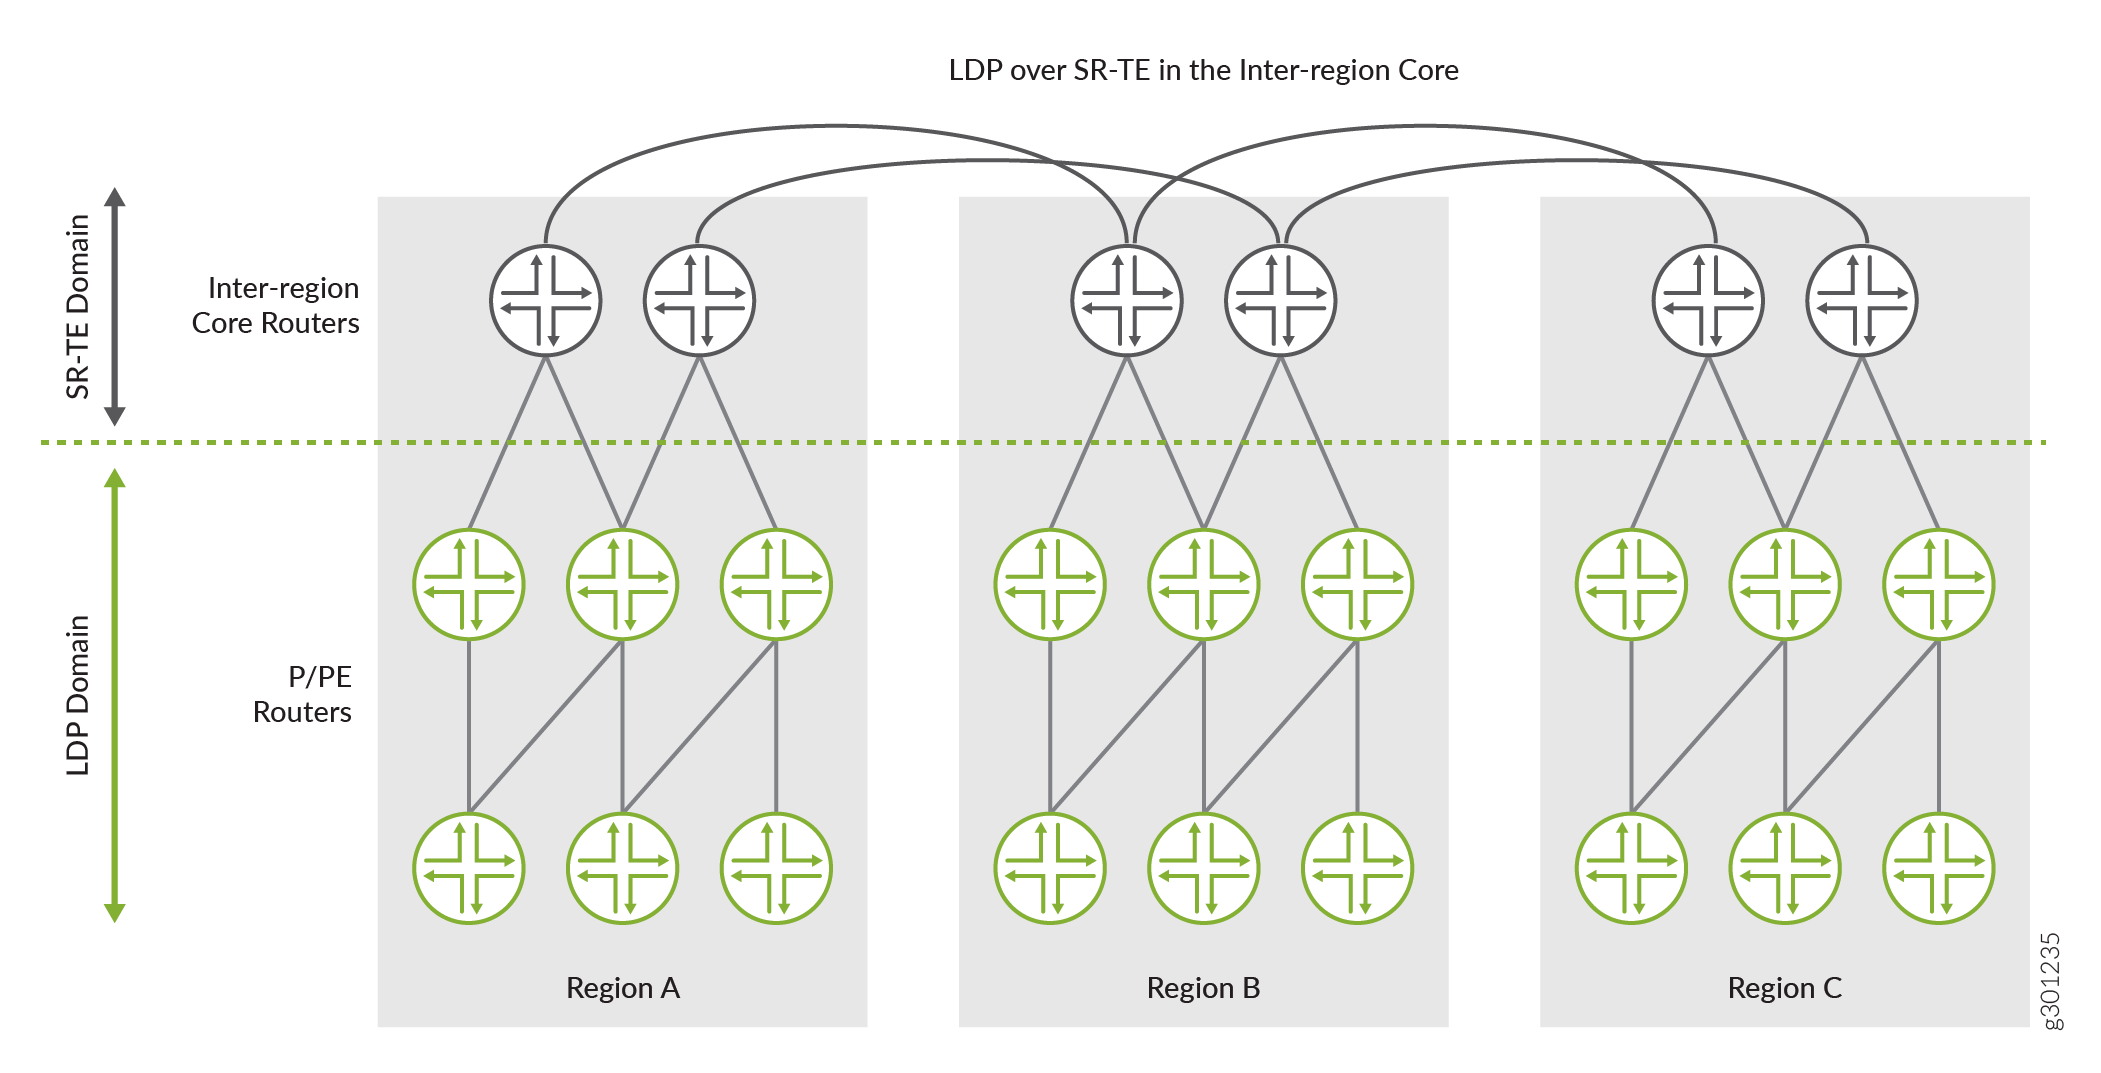 LDP over SR-TE between
Inter-region Core Networks